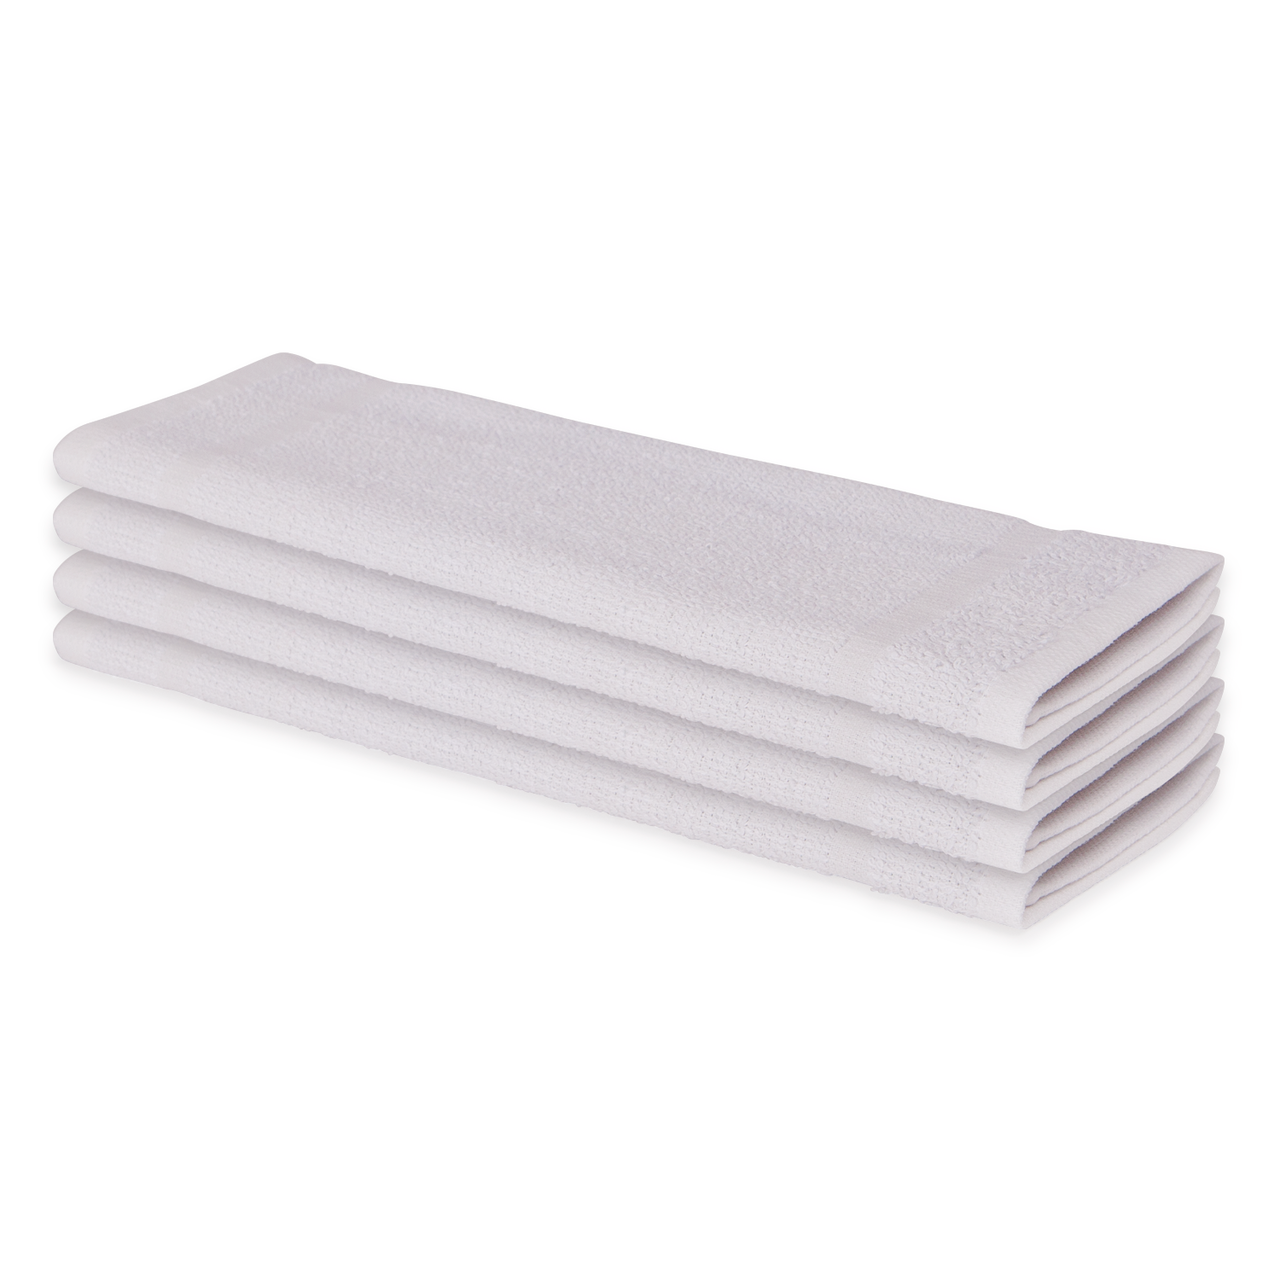 60 Wholesale White Wash Cloths Size 12x12 Cotton